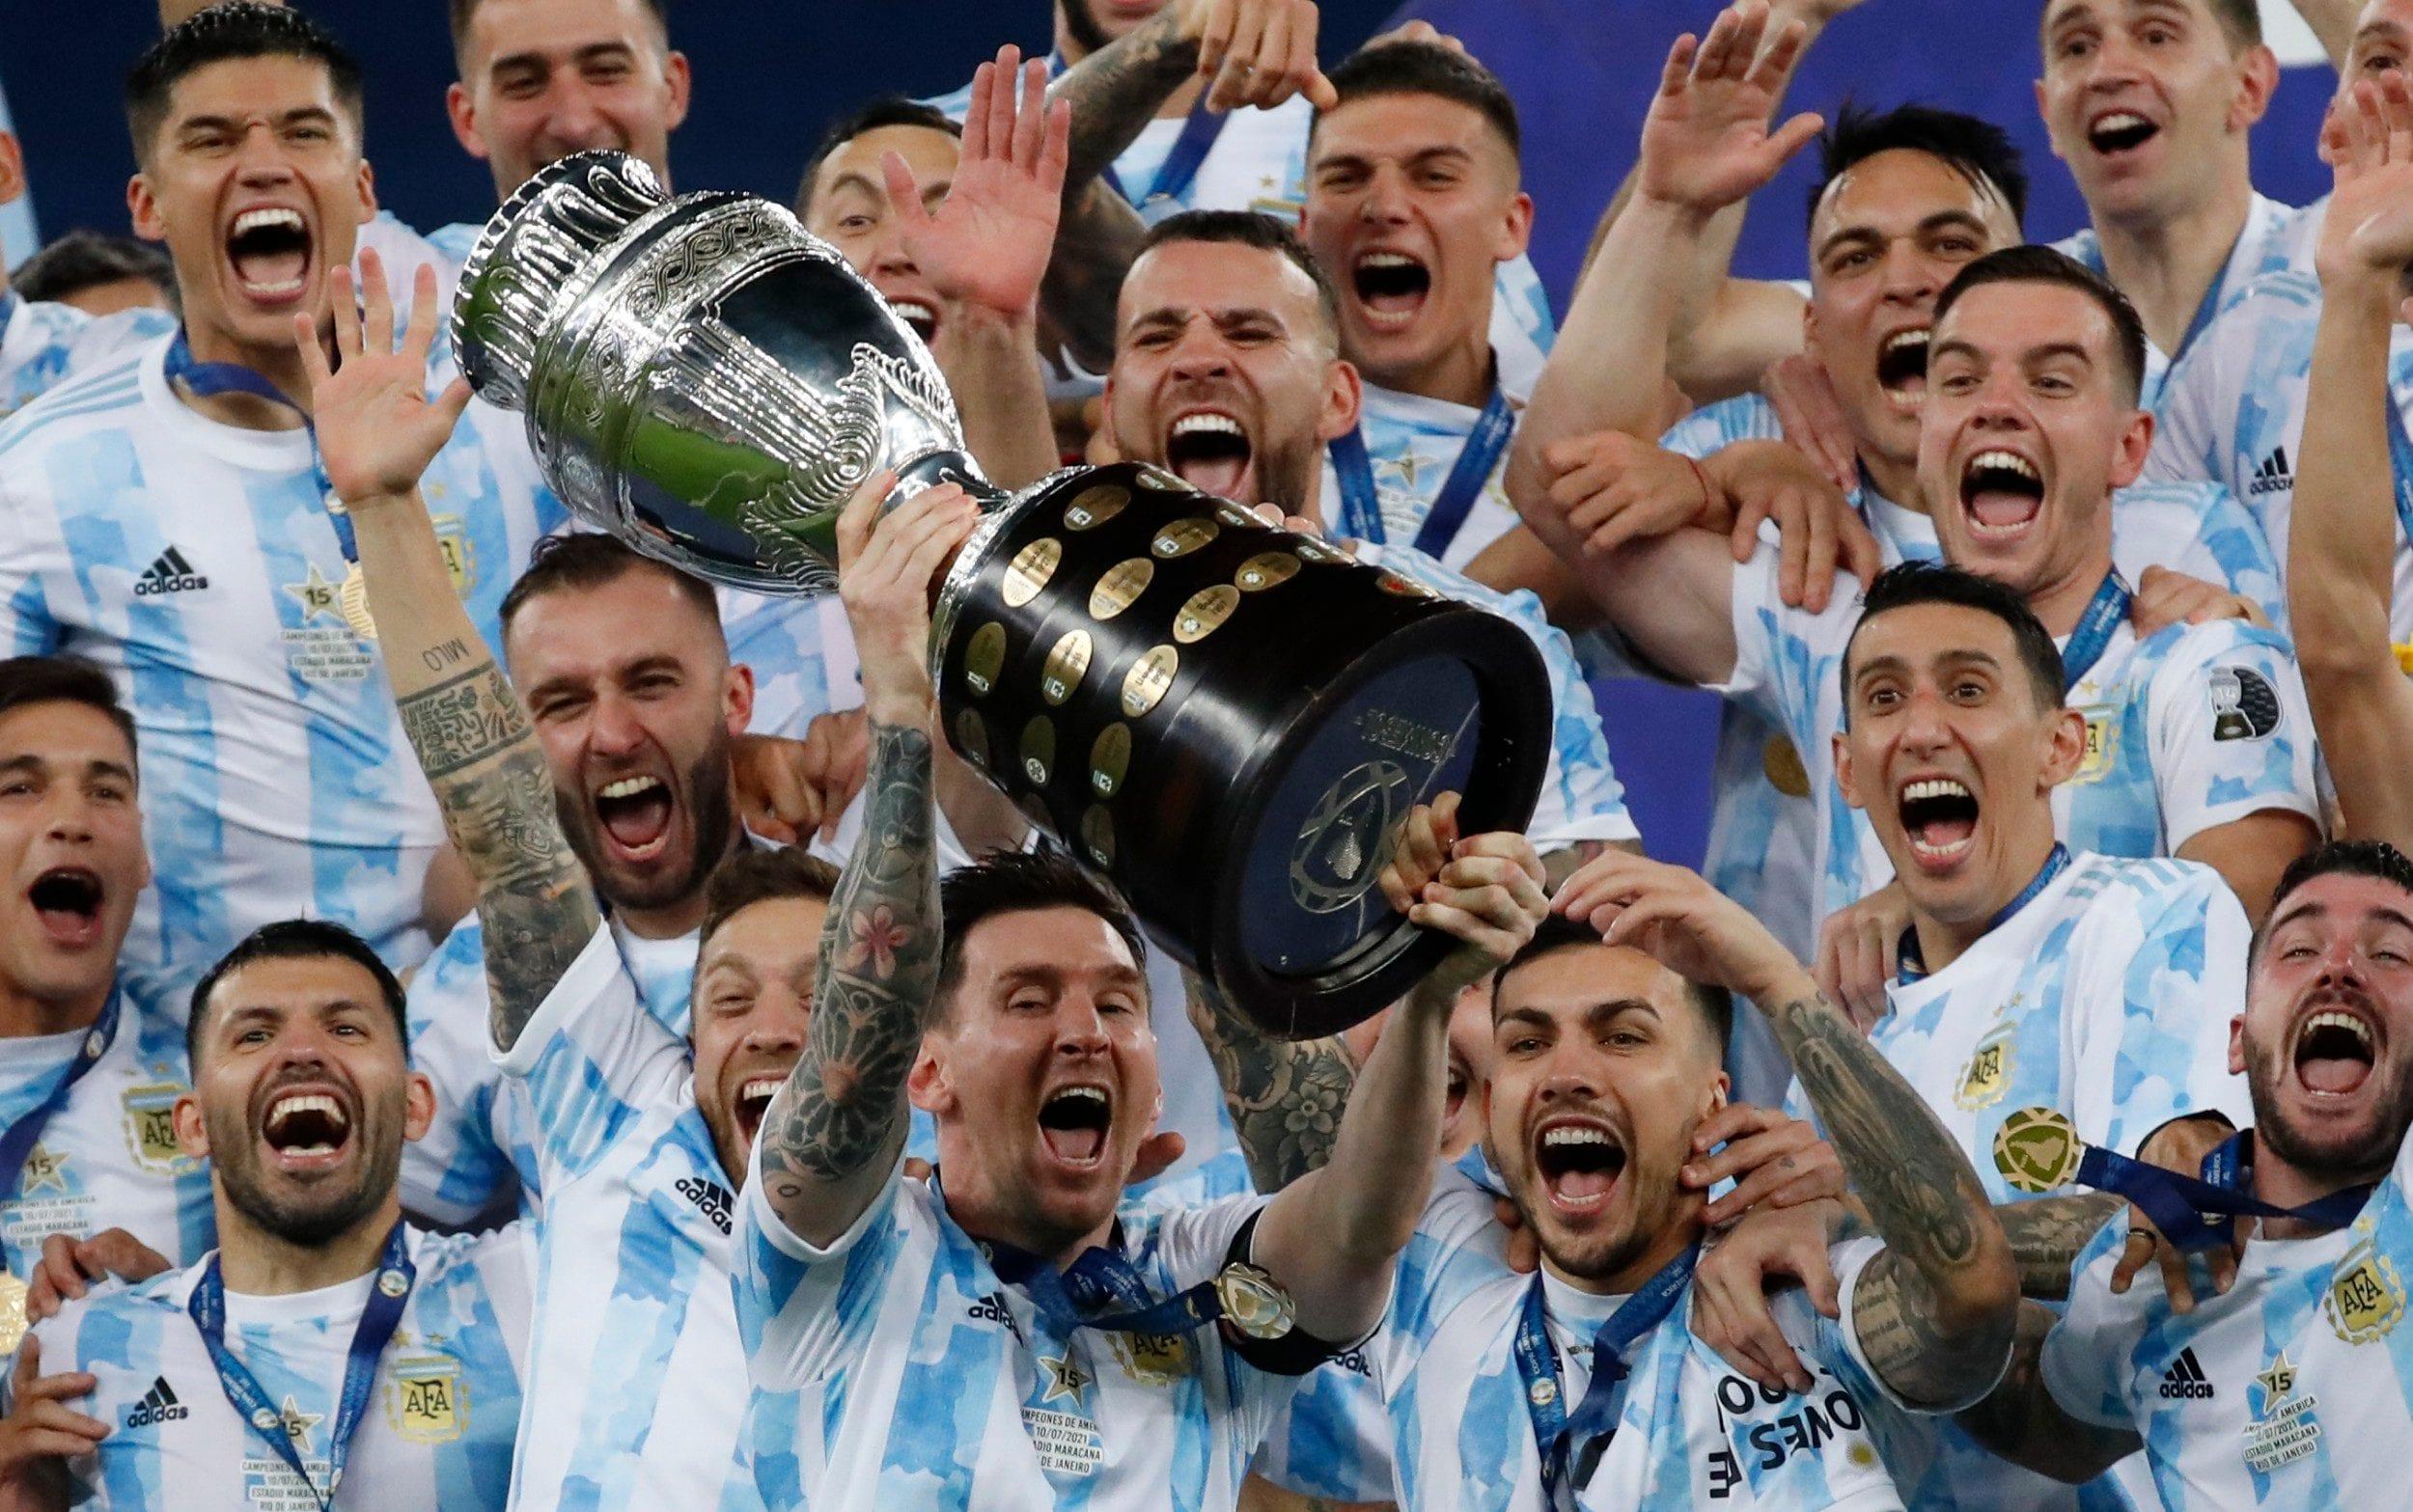 Những trận đấu giữa những đội quốc gia tài năng như Argentina sẽ mang đến những giờ phút thăng hoa và cảm xúc, và bạn không thể bỏ lỡ nó. Xem ảnh này để chuẩn bị cho sự kiện này và đam mê bóng đá của bạn sẽ được tái sinh.